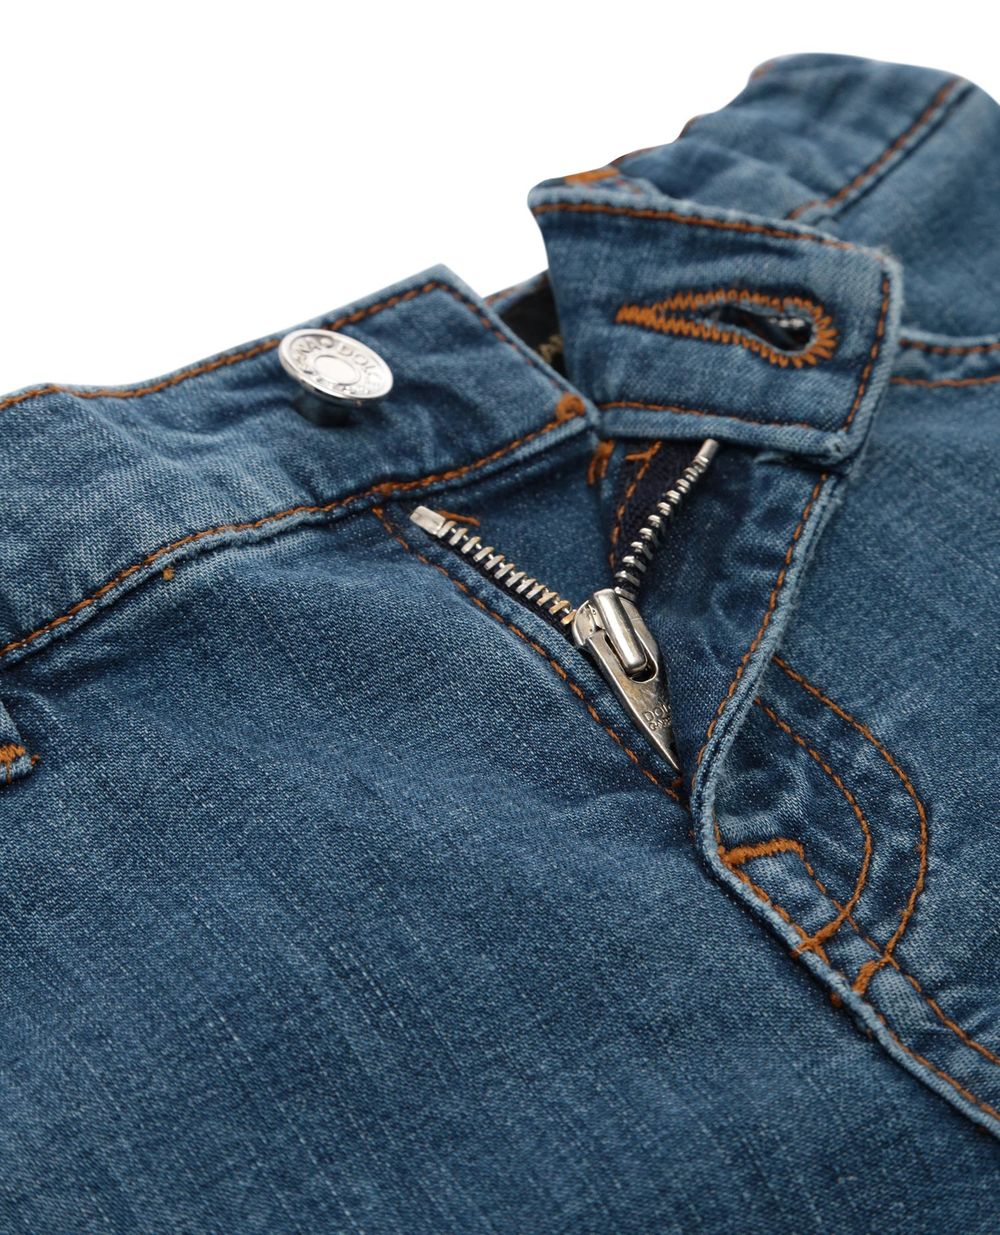 Джинсовые шорты Dolce&Gabbana Kids L12Q38-LD824, синий цвет • Купить в интернет-магазине Kameron